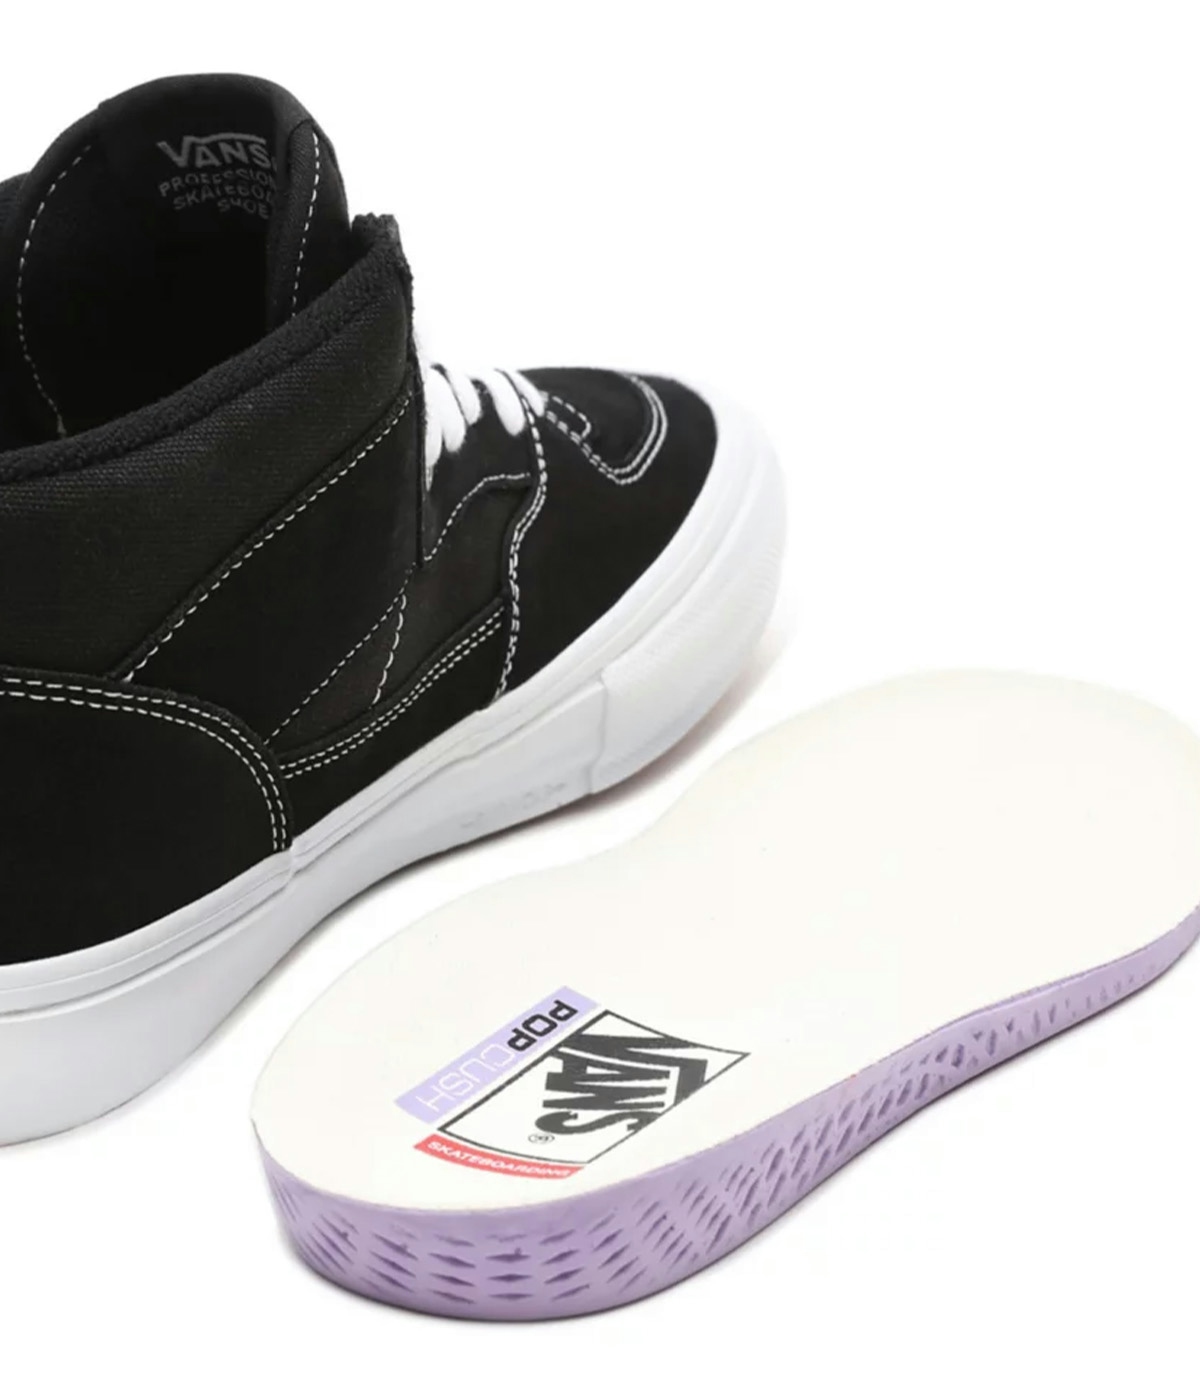 Vans Skate Half Cab Shoes - Skor Black/White 3